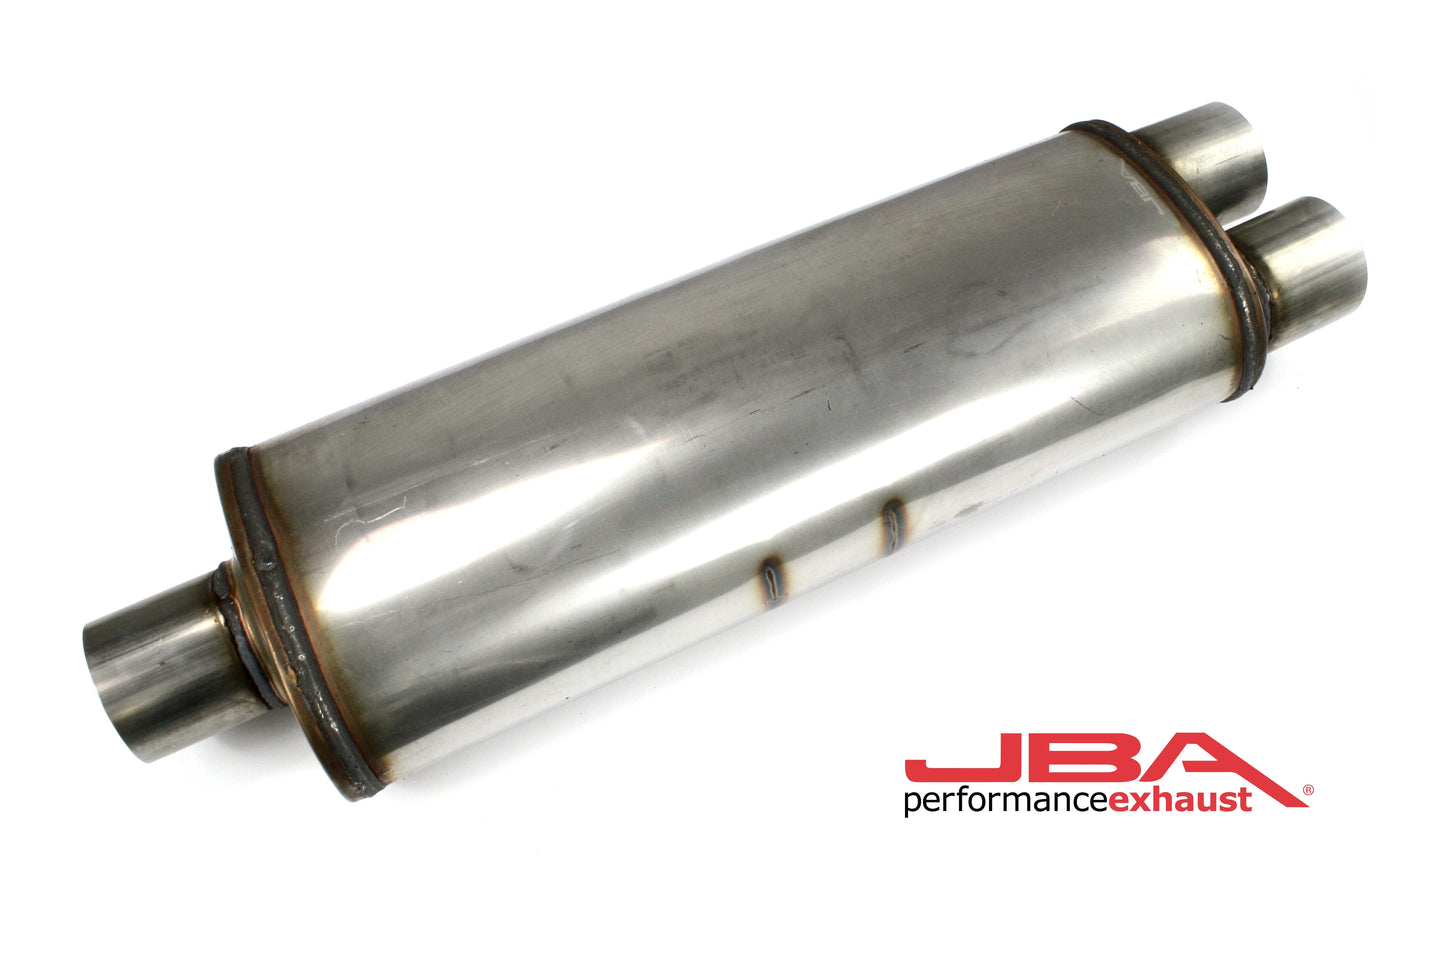 JBA Performance Exhaust 40-302500 "Universal" Chambered 304SS Muffler 25"X8"X5" 3" Center/Dual out